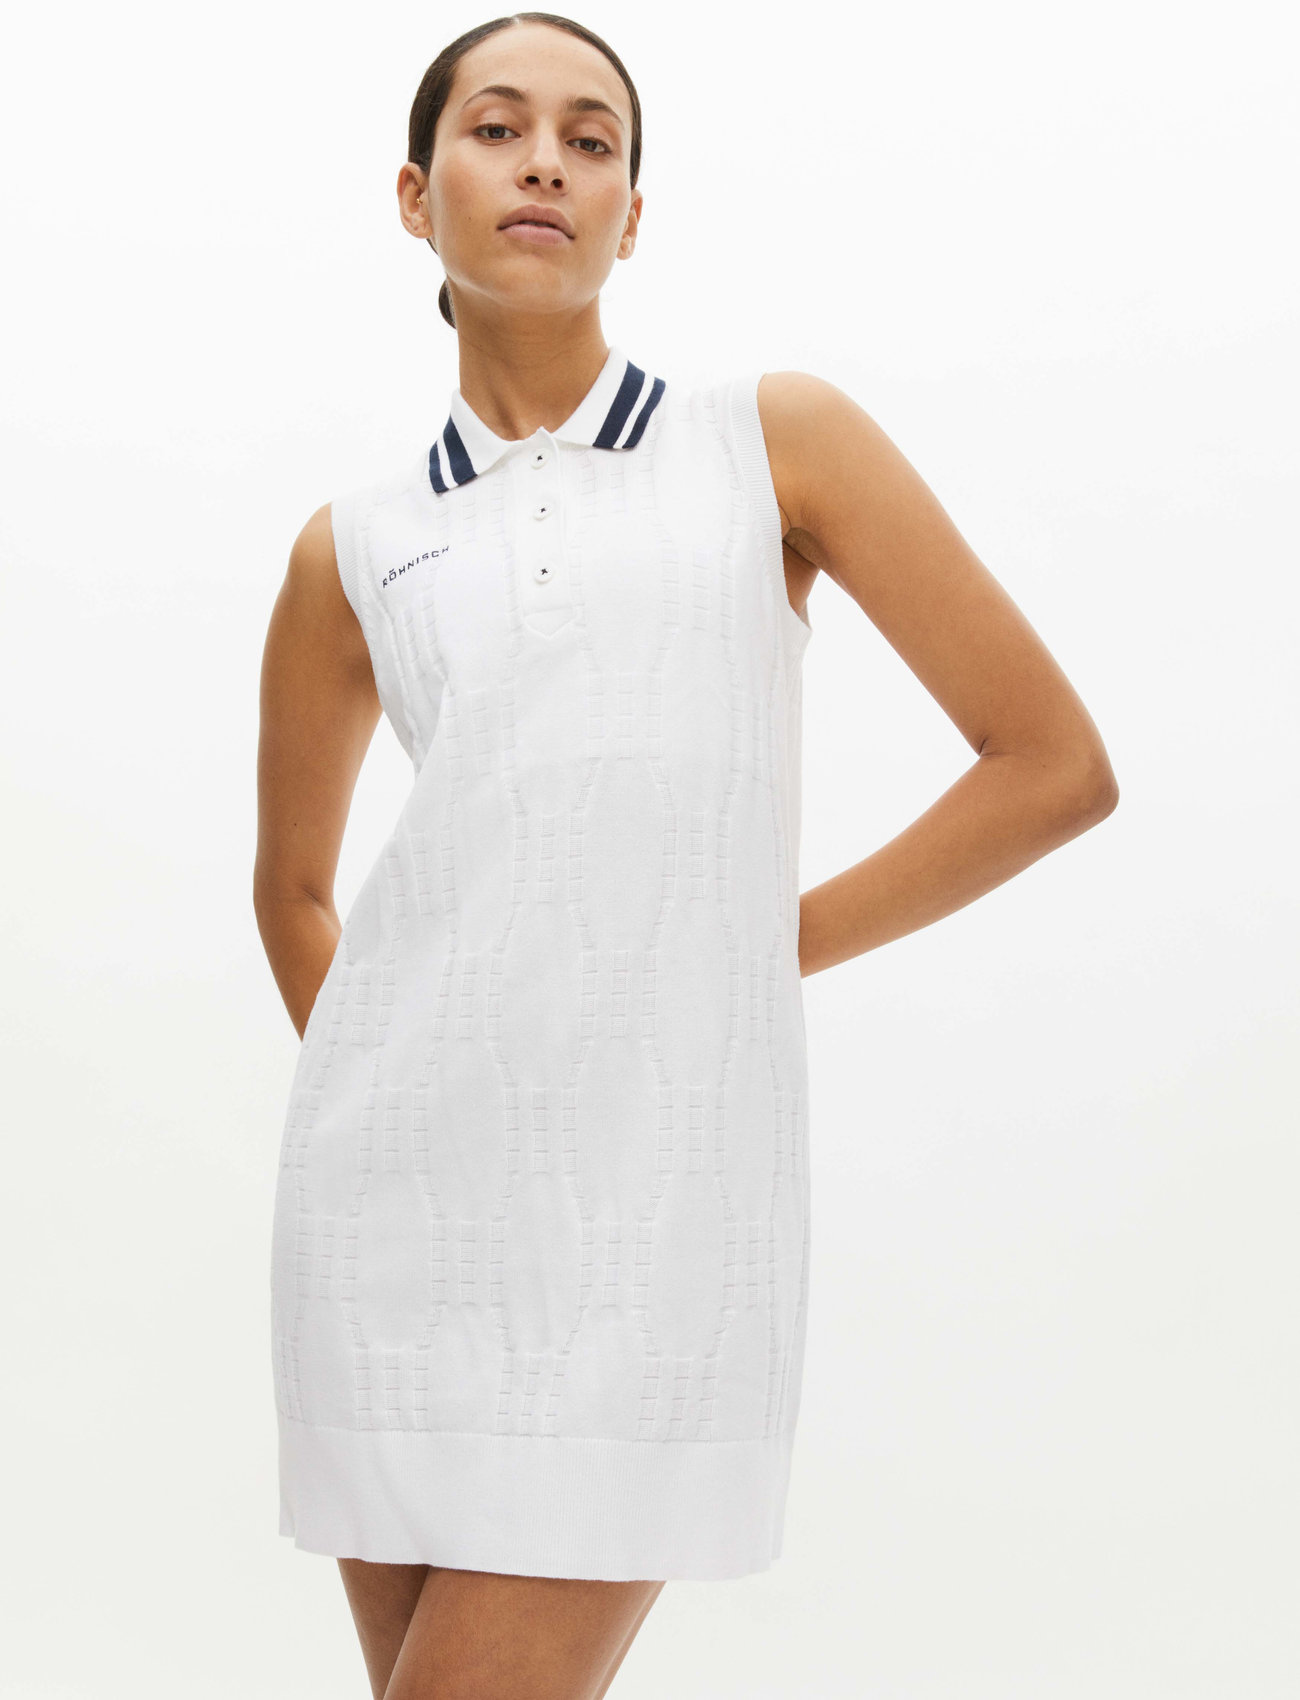 Röhnisch - Riviera knit dress - sportkleider - white - 1